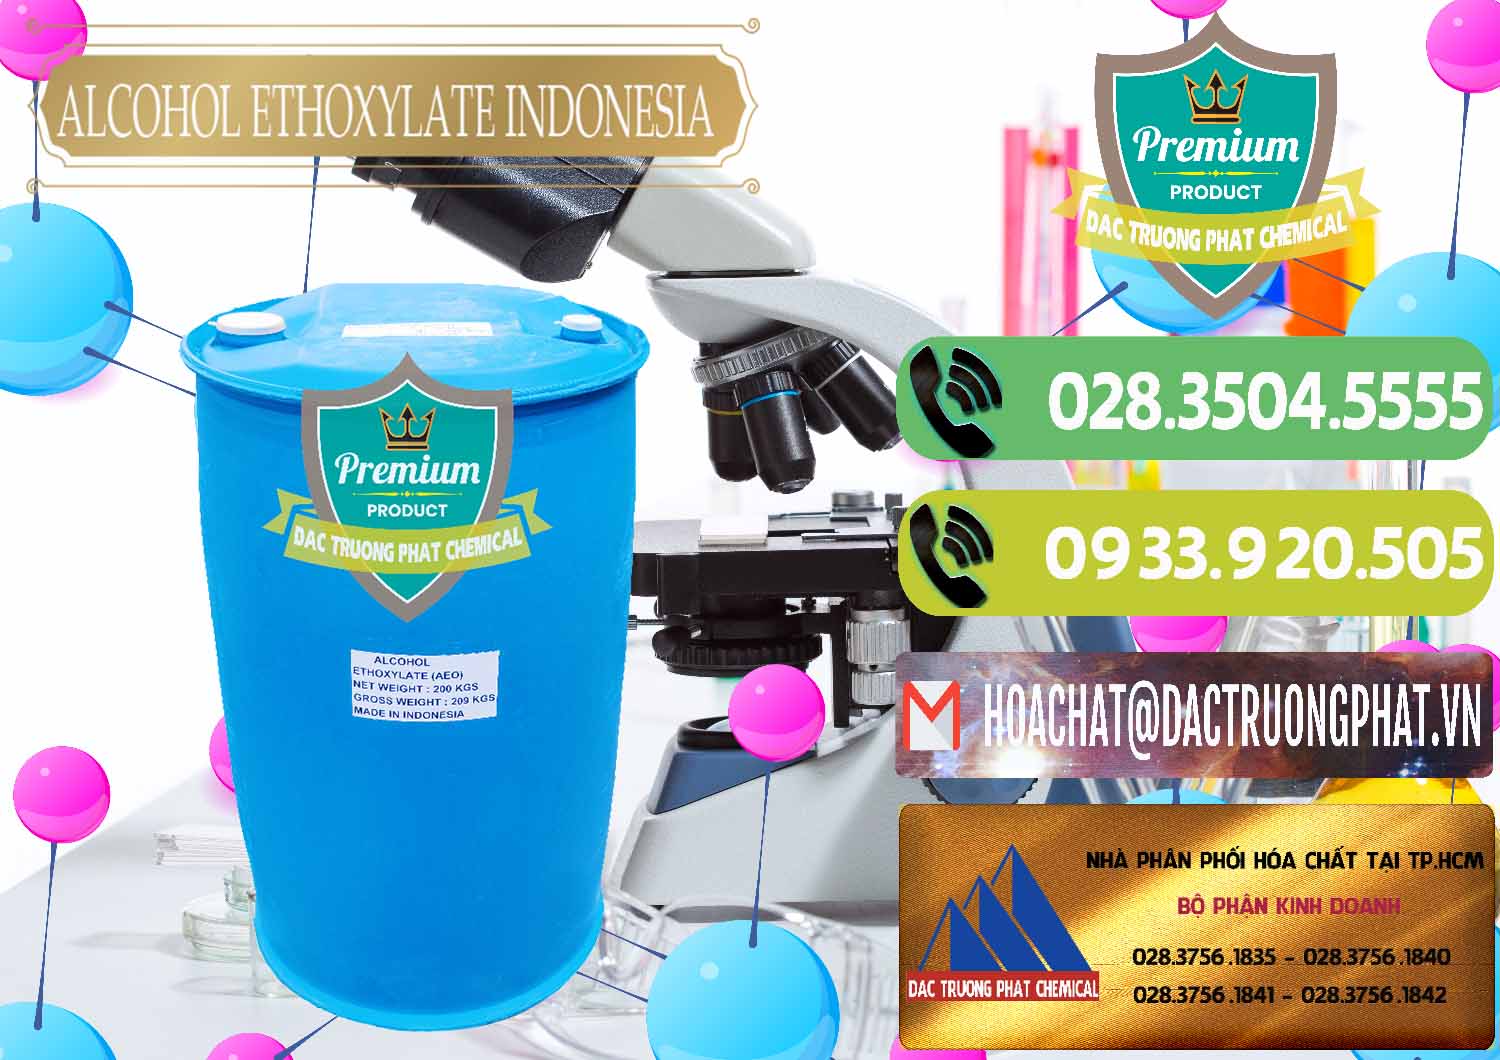 Công ty cung cấp _ bán Alcohol Ethoxylate Indonesia - 0308 - Nơi cung ứng ( phân phối ) hóa chất tại TP.HCM - hoachatmientay.vn